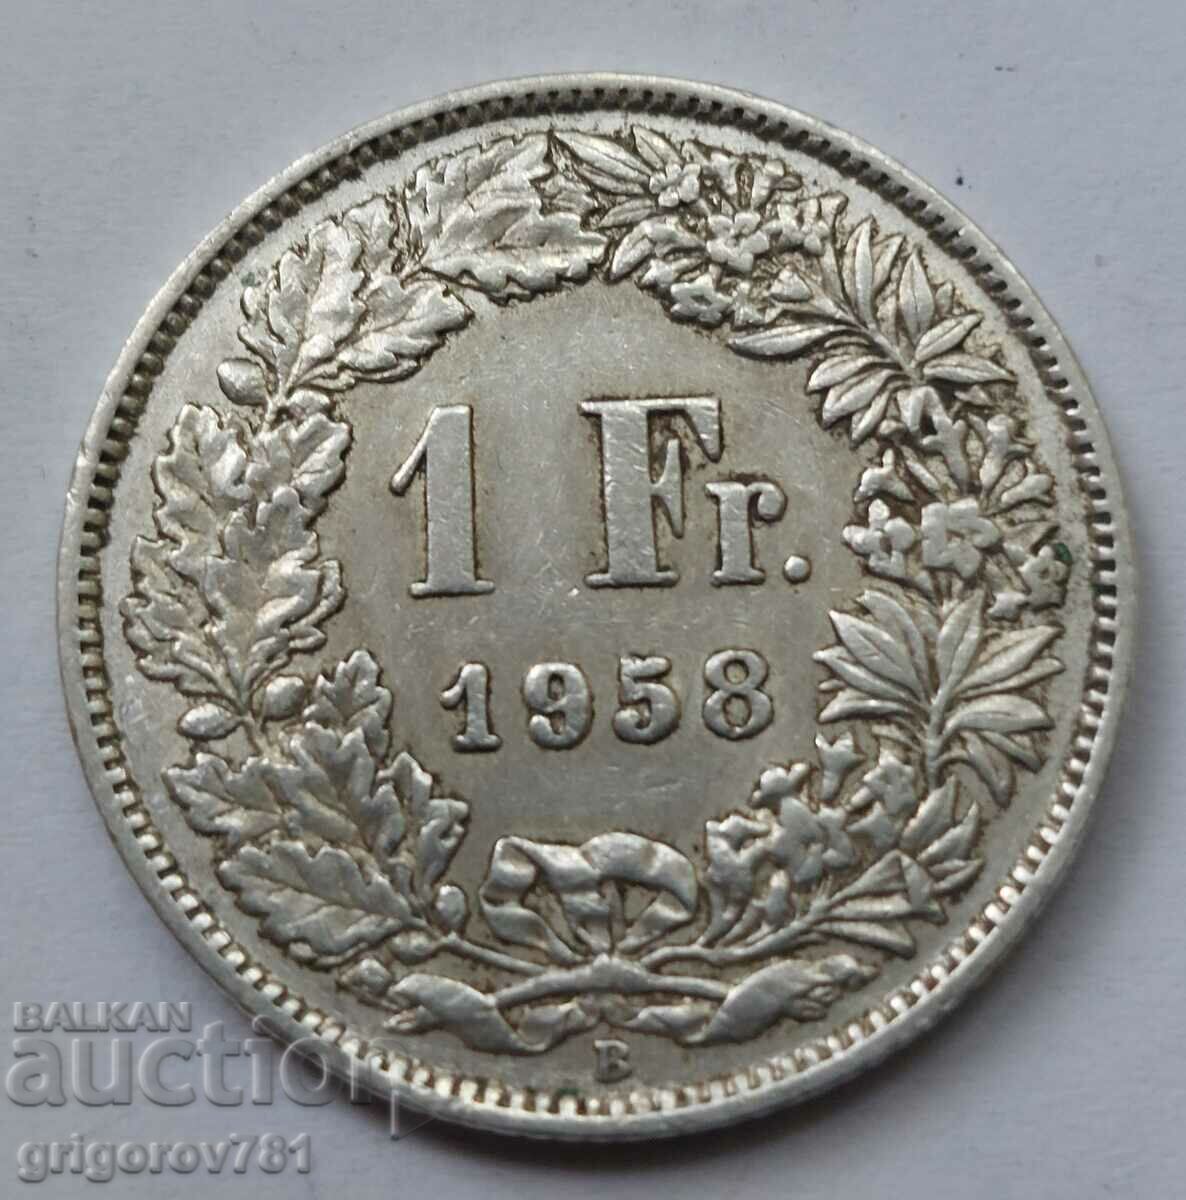 Ασημένιο 1 Φράγκο Ελβετία 1958 B - Ασημένιο νόμισμα #28